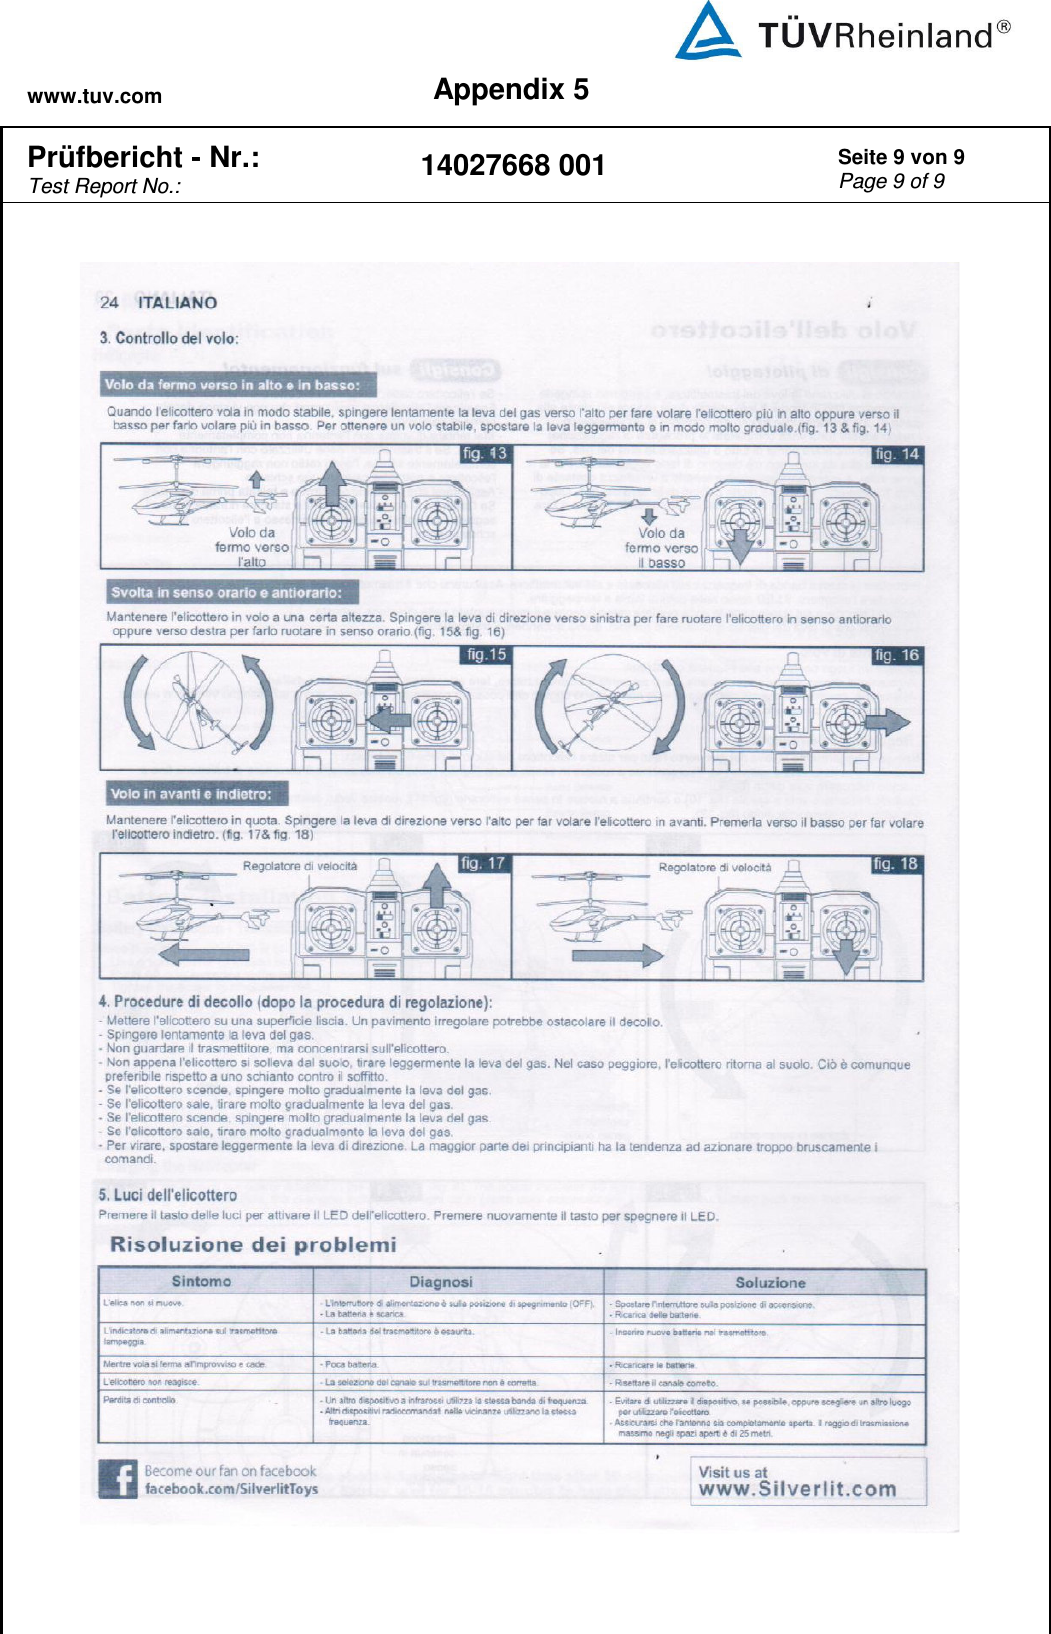 www.tuv.com Appendix 5  Prüfbericht - Nr.:  Test Report No.: 14027668 001 Seite 9 von 9 Page 9 of 9        